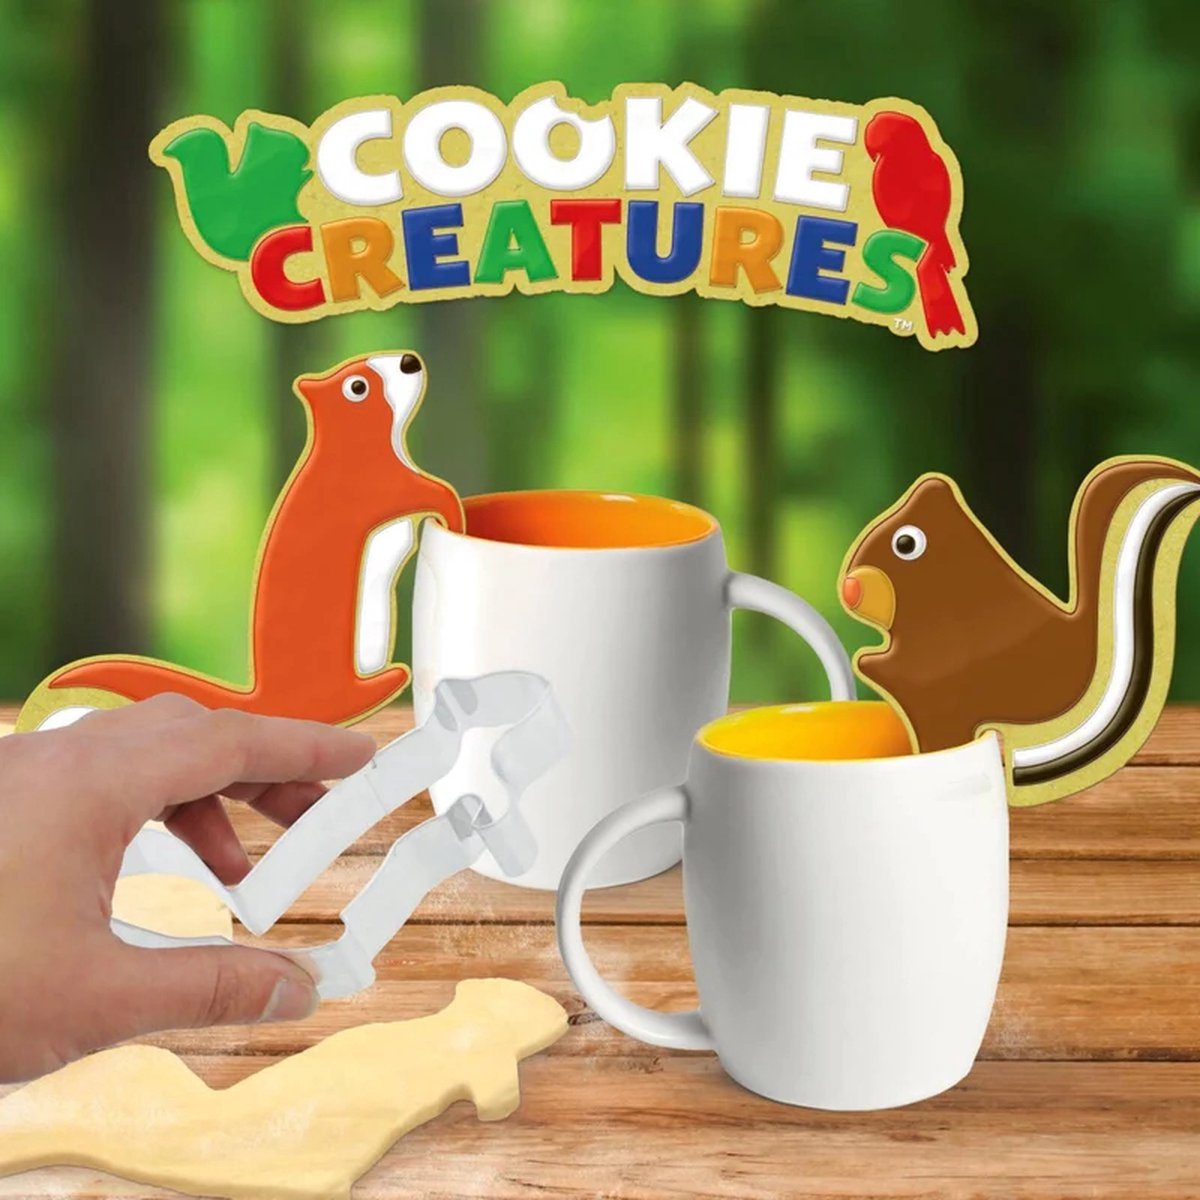 Mustard - Koekvormpjes Dieren Cookie Creatures - Eekhoorns